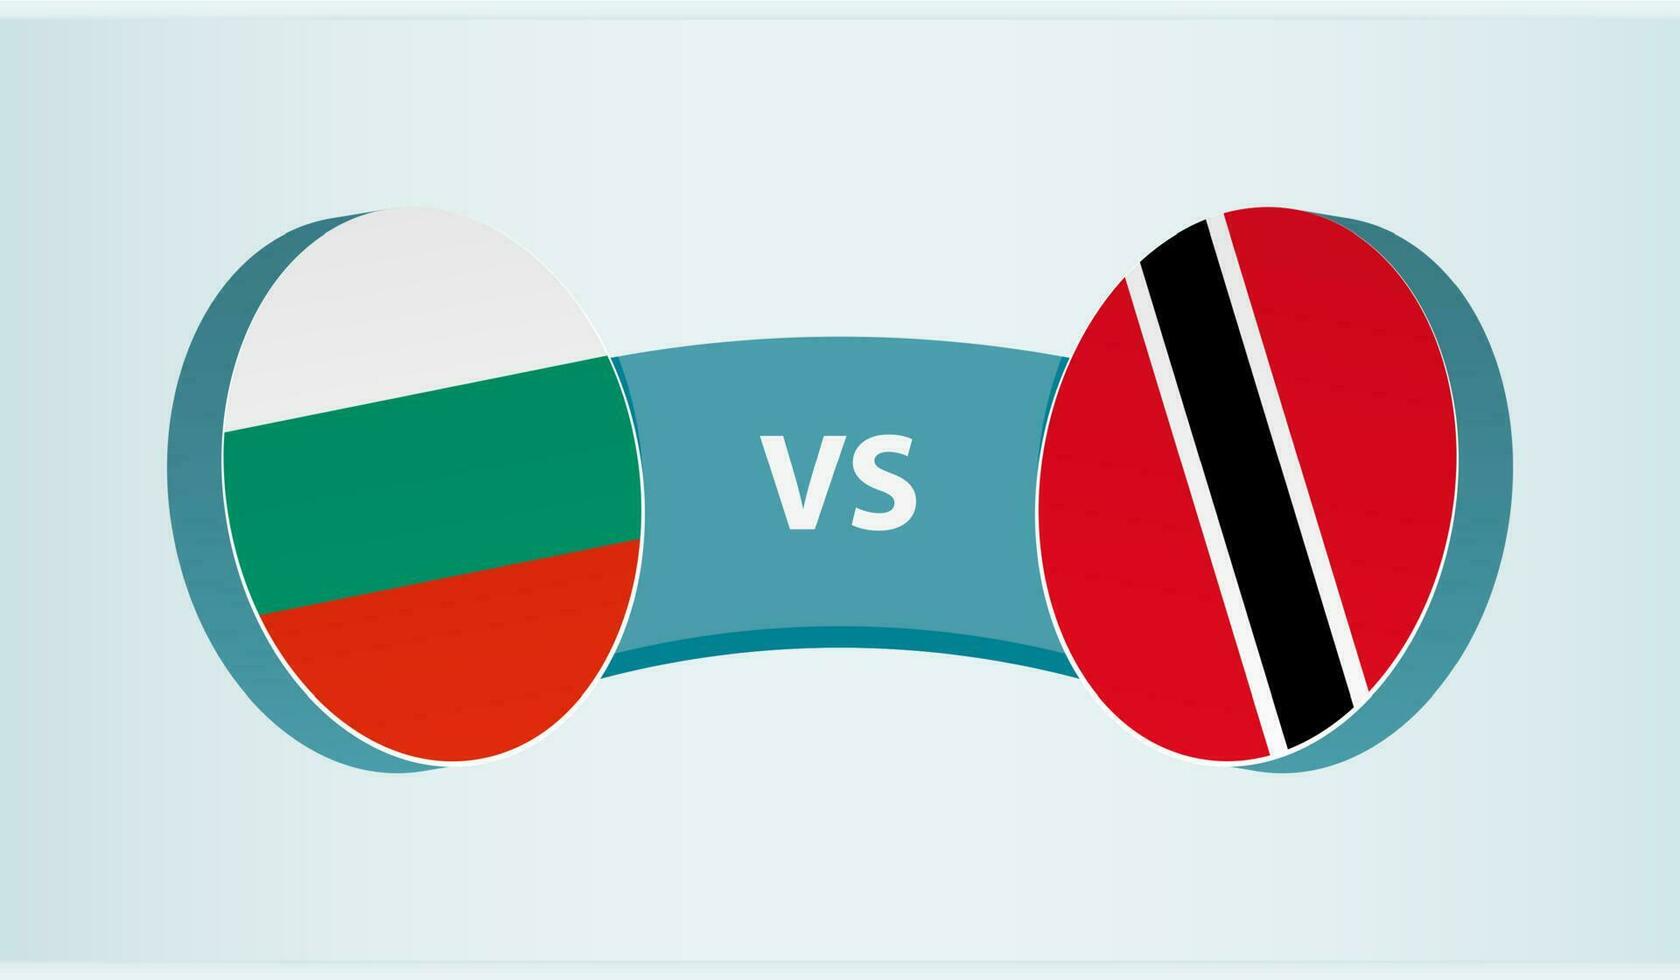 Bulgaria versus Trinidad and Tobago, team sports competition concept. vector